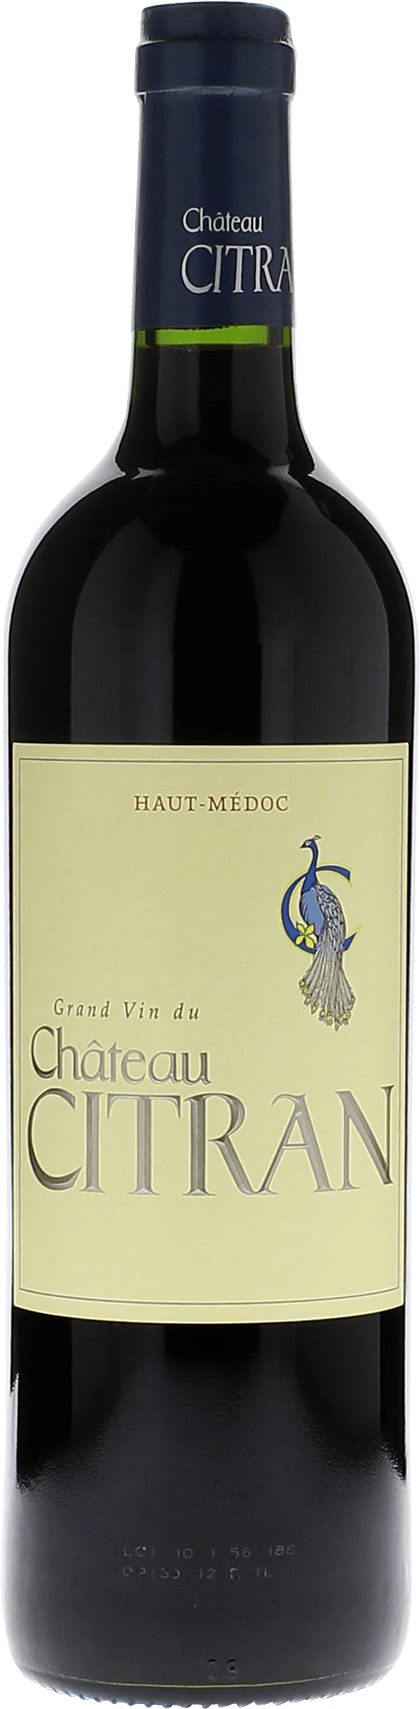 Citran 2016  Haut-Mdoc, Bordeaux rouge